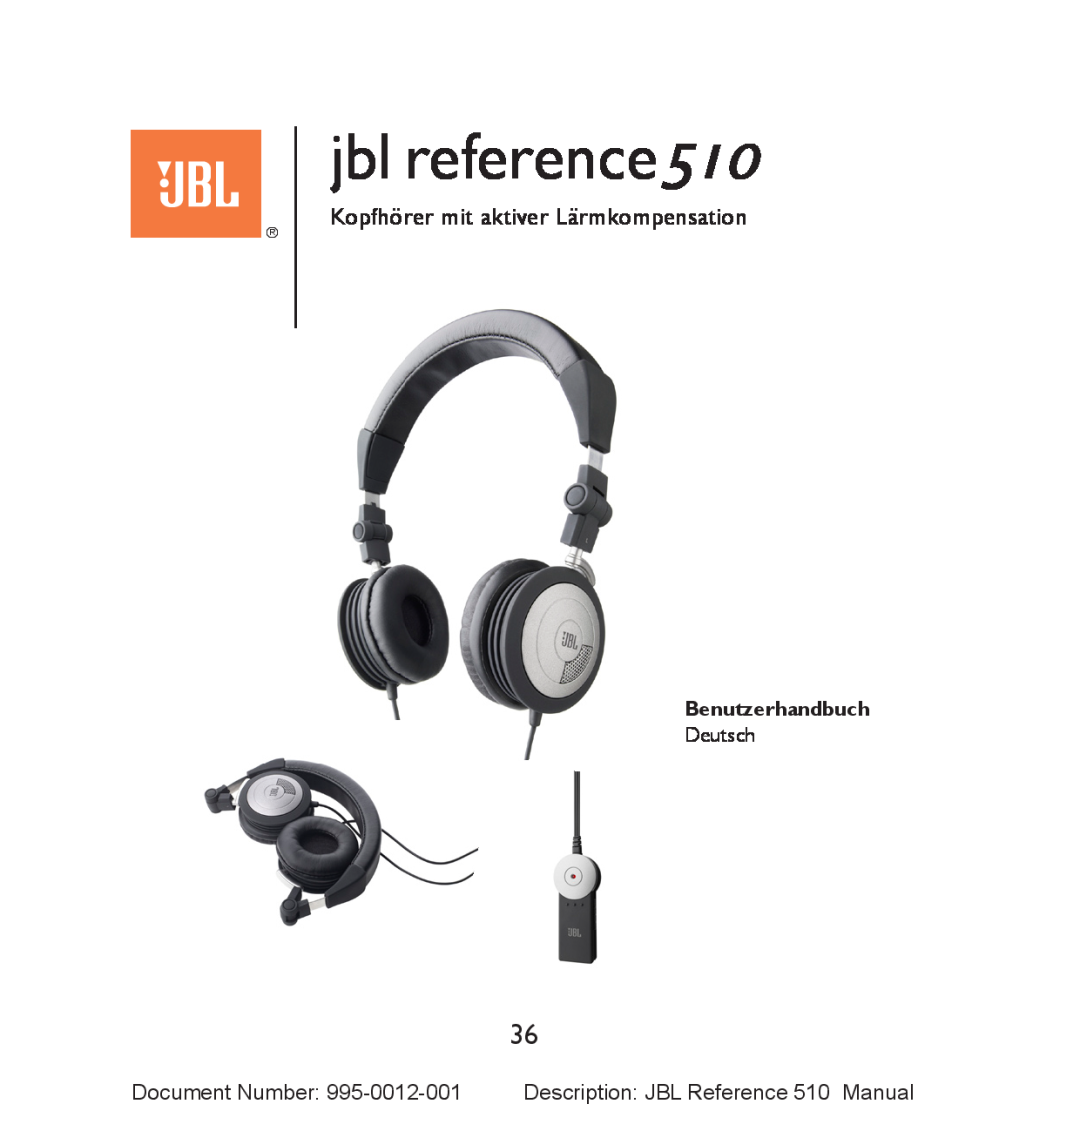 JBL manual Kopfhörer mit aktiver Lärmkompensation, Benutzerhandbuch, jbl reference510 